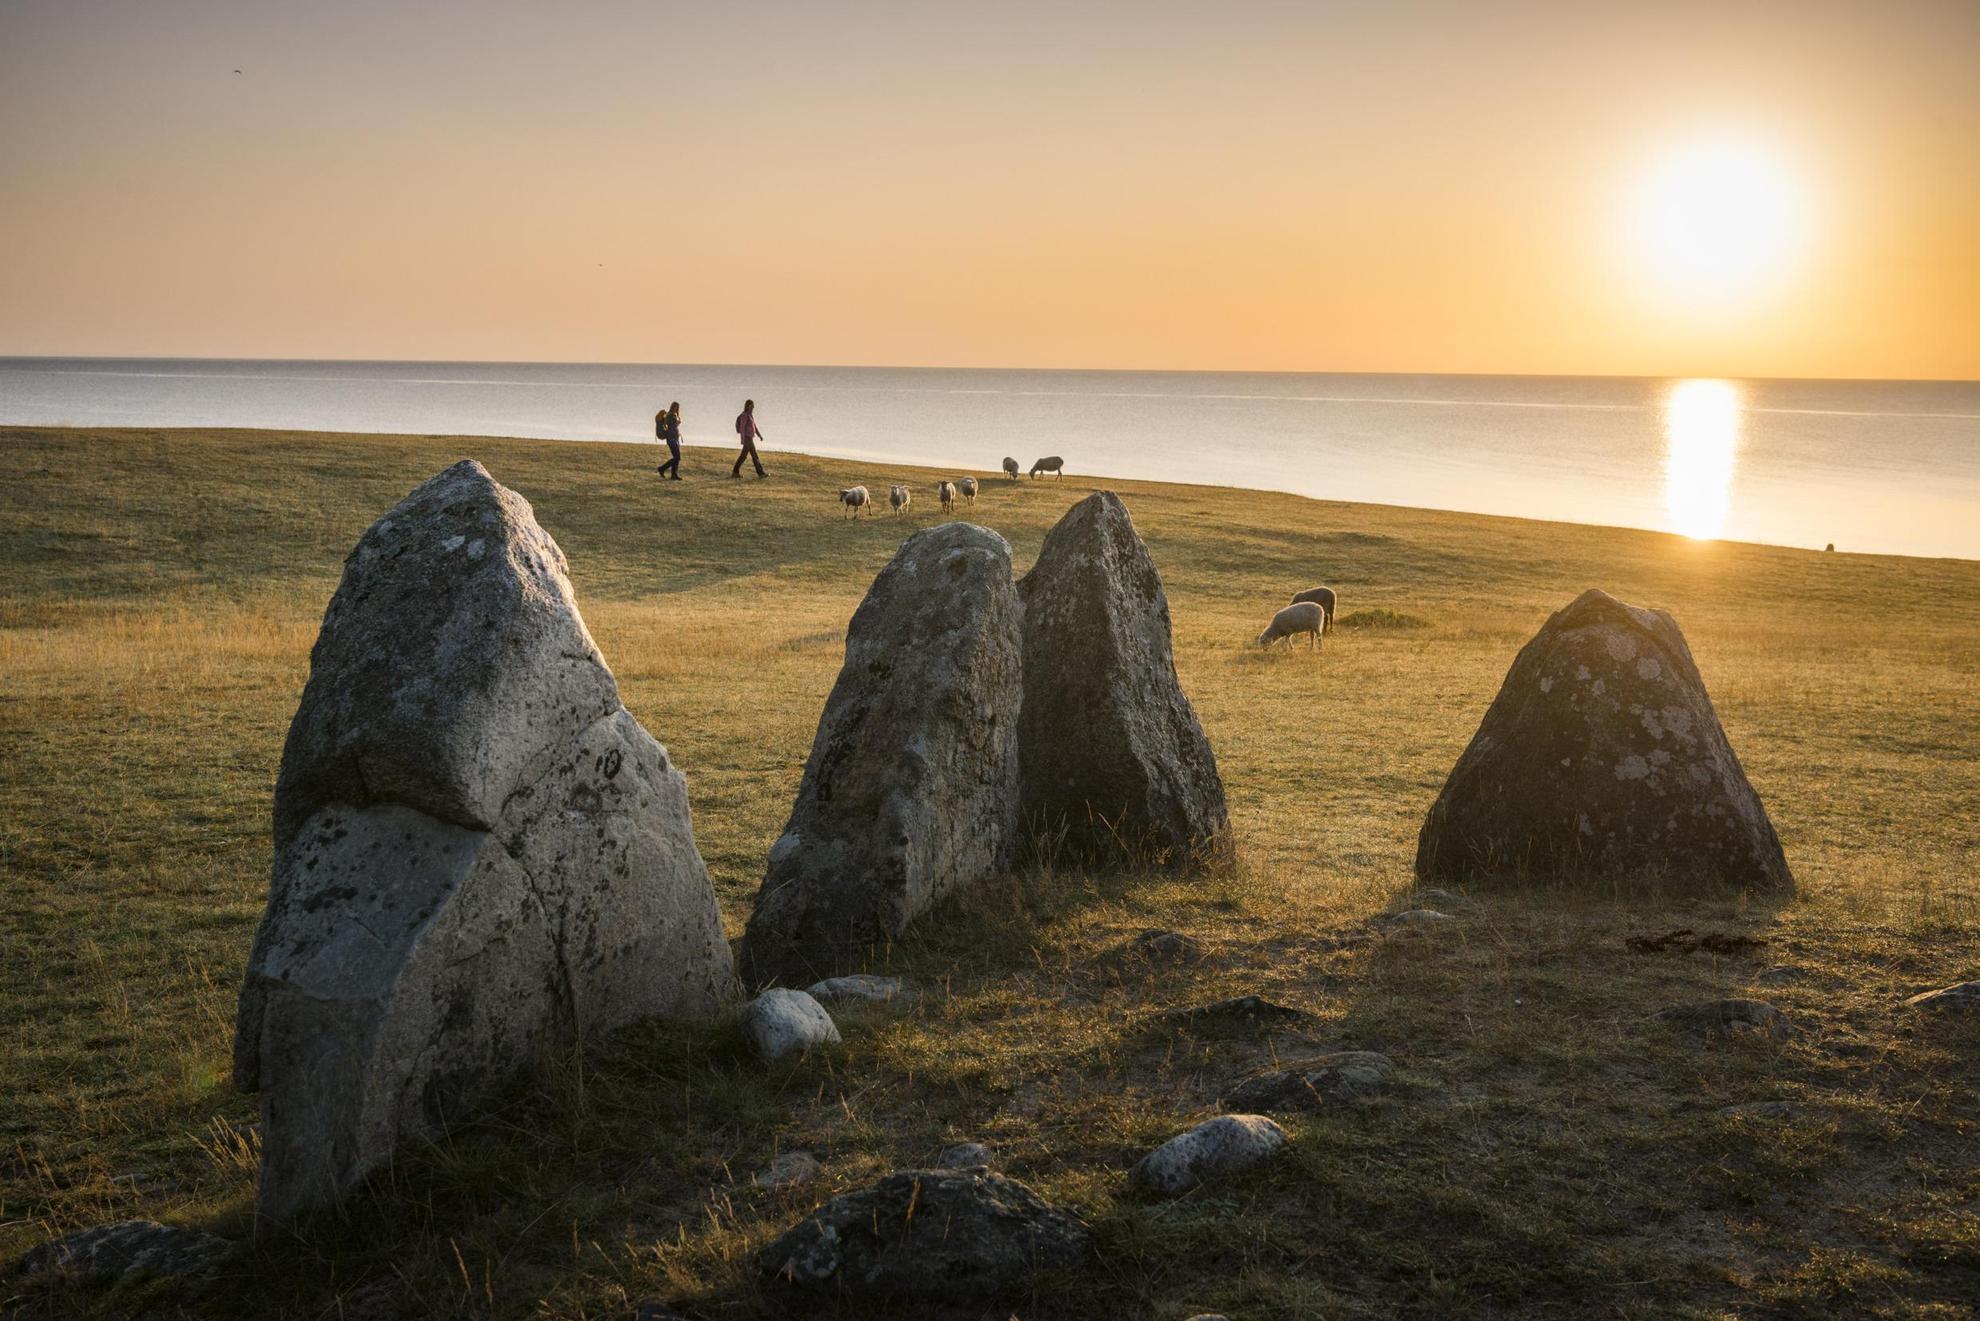 Ein megalithisches Monument in Form eines Steinschiffs. 4 der 59 Felsblöcken sind auf dem Bild zu erkennen. Him Hintergrund spazieren Wanderer.Schafe grassen auf der Wiese. Die Sonne spiegelt sich im Meerwasser.